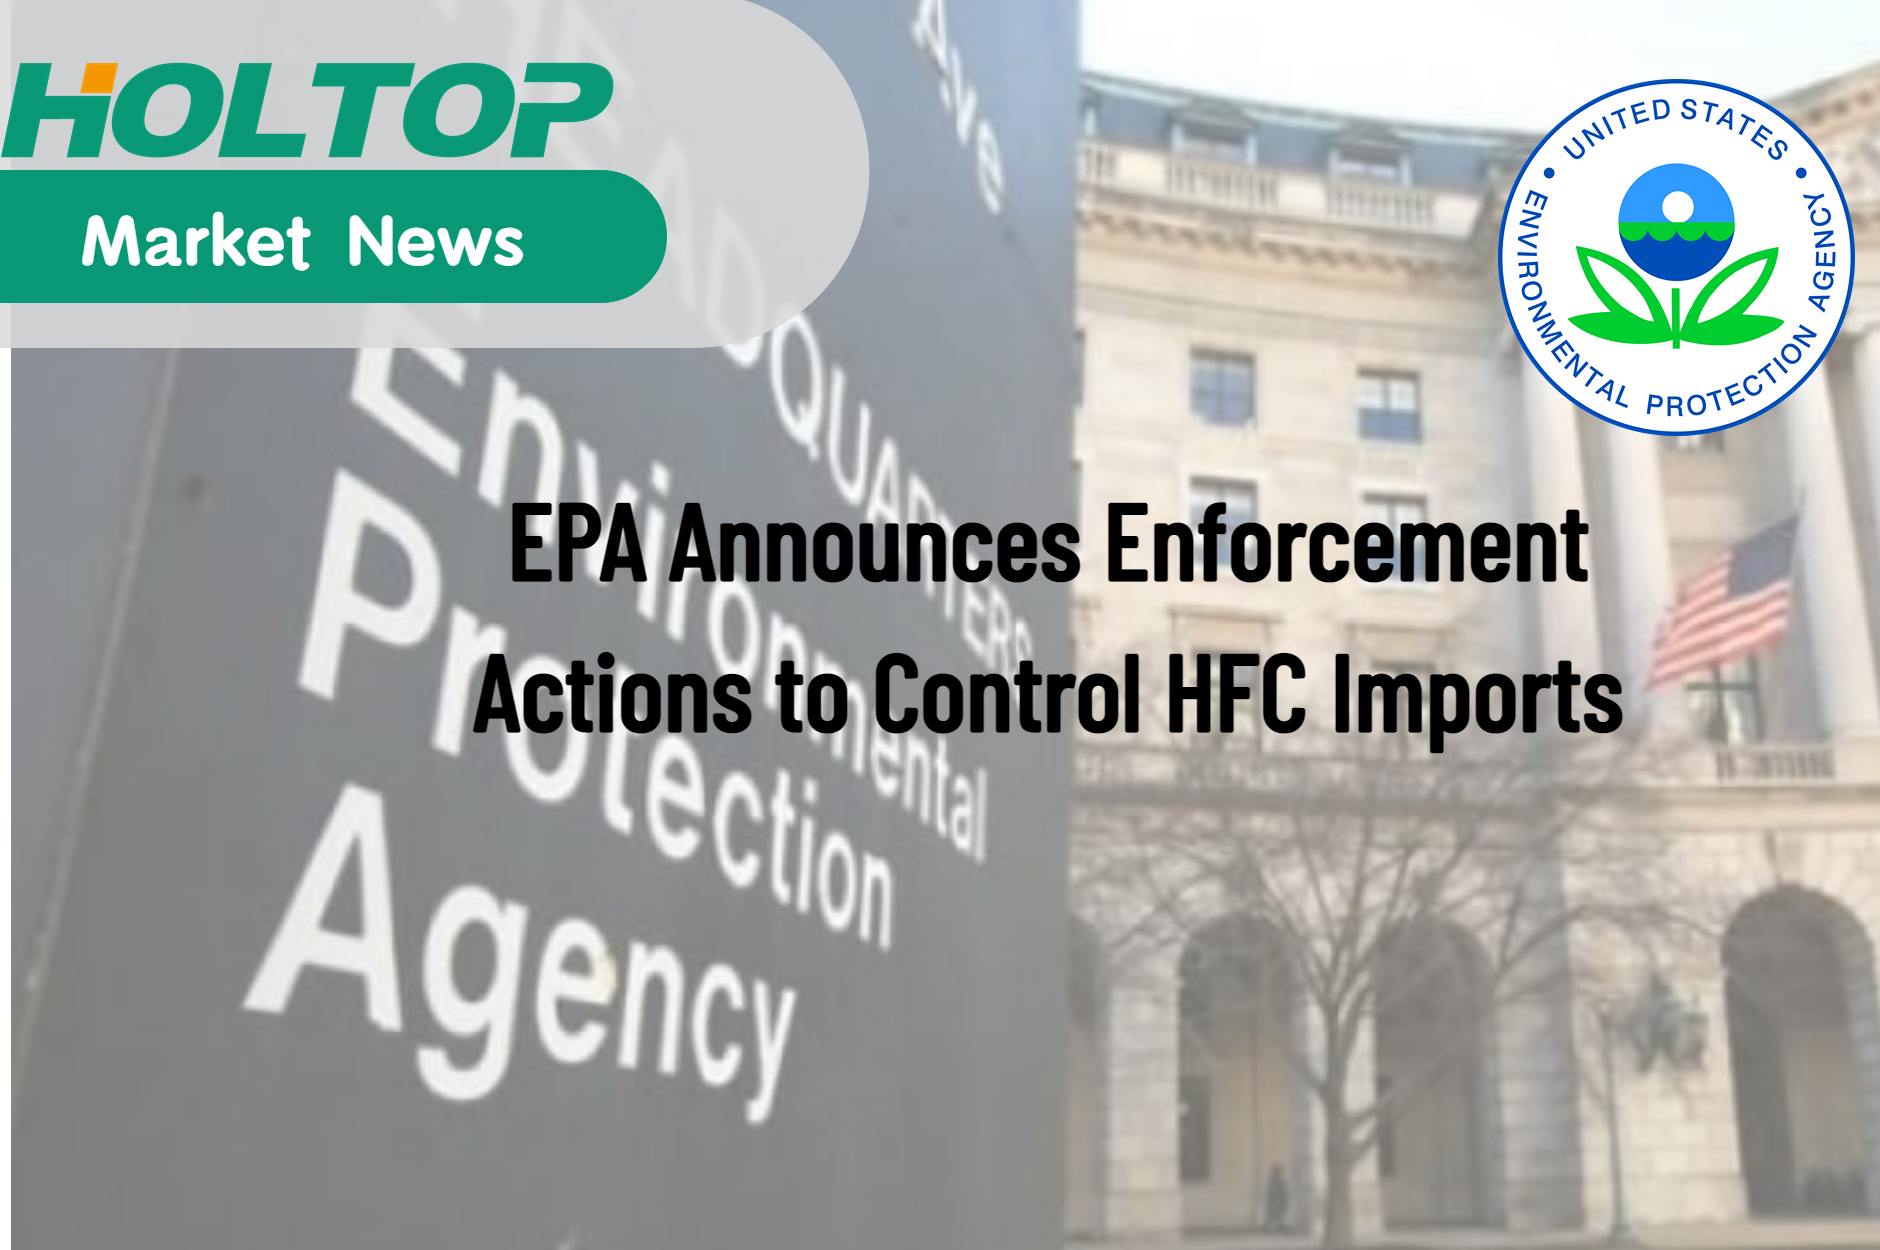 EPA объявляет о мерах по обеспечению контроля над импортом ГФУ